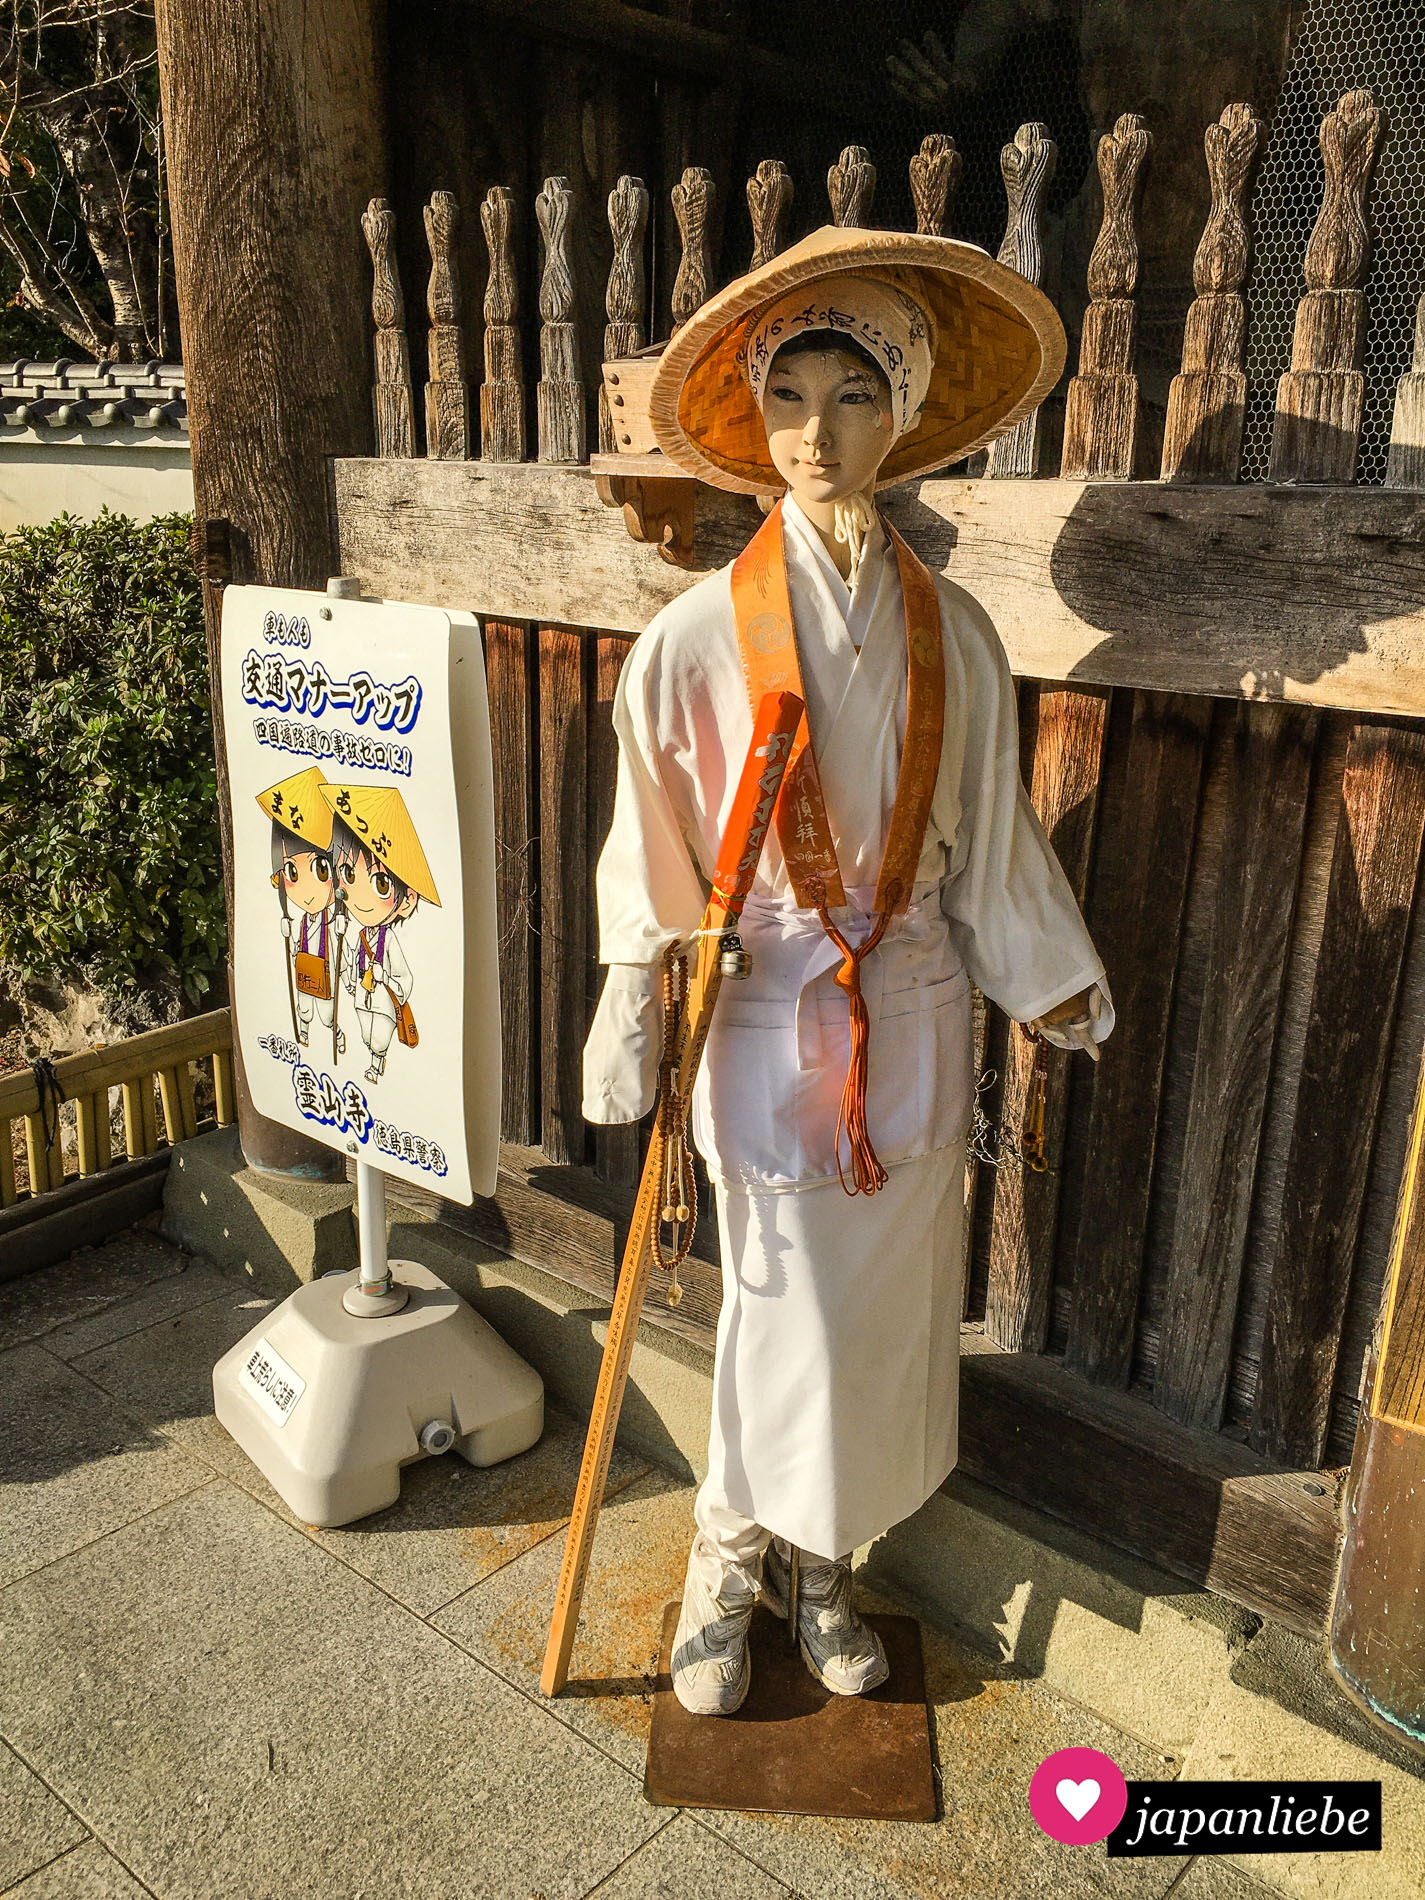 So sieht die klassische Pilgerkluft in Japan aus: weiße Kleidung, Stab, Hut.